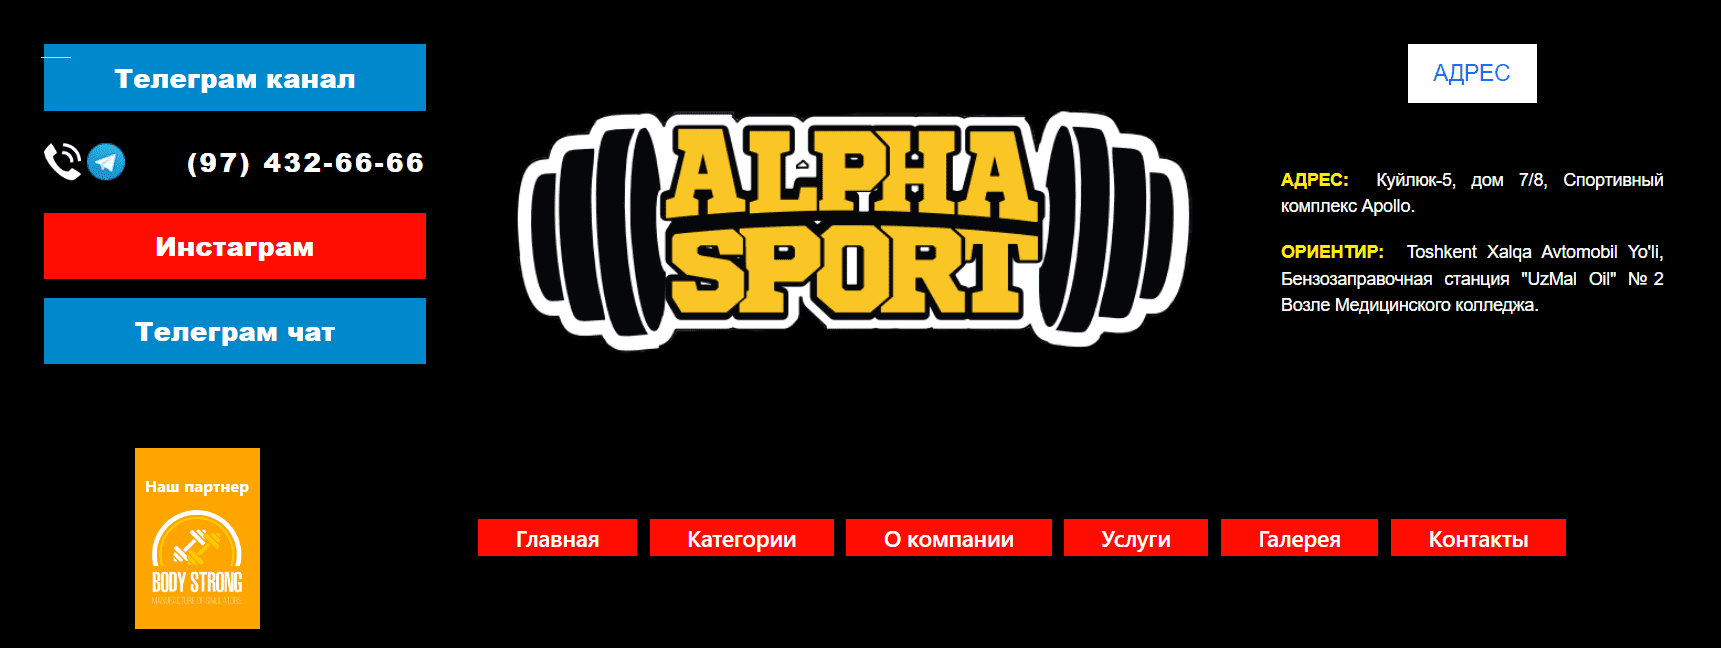 ALPHA SPORT (prosport.uz) - официальный сайт